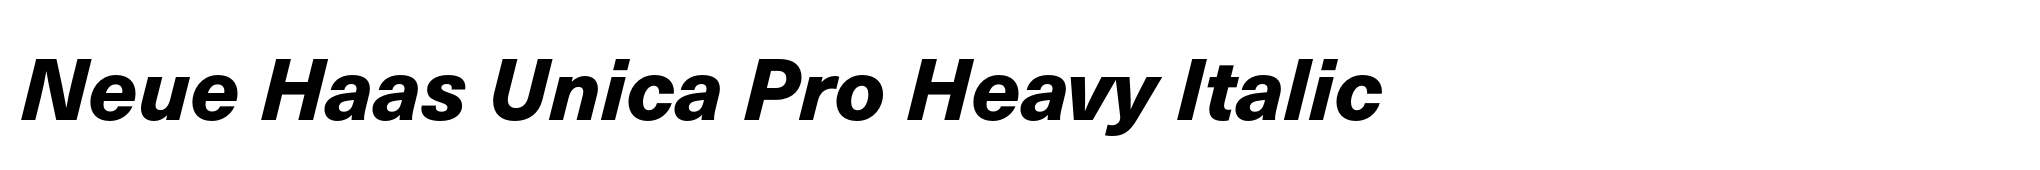 Neue Haas Unica Pro Heavy Italic image